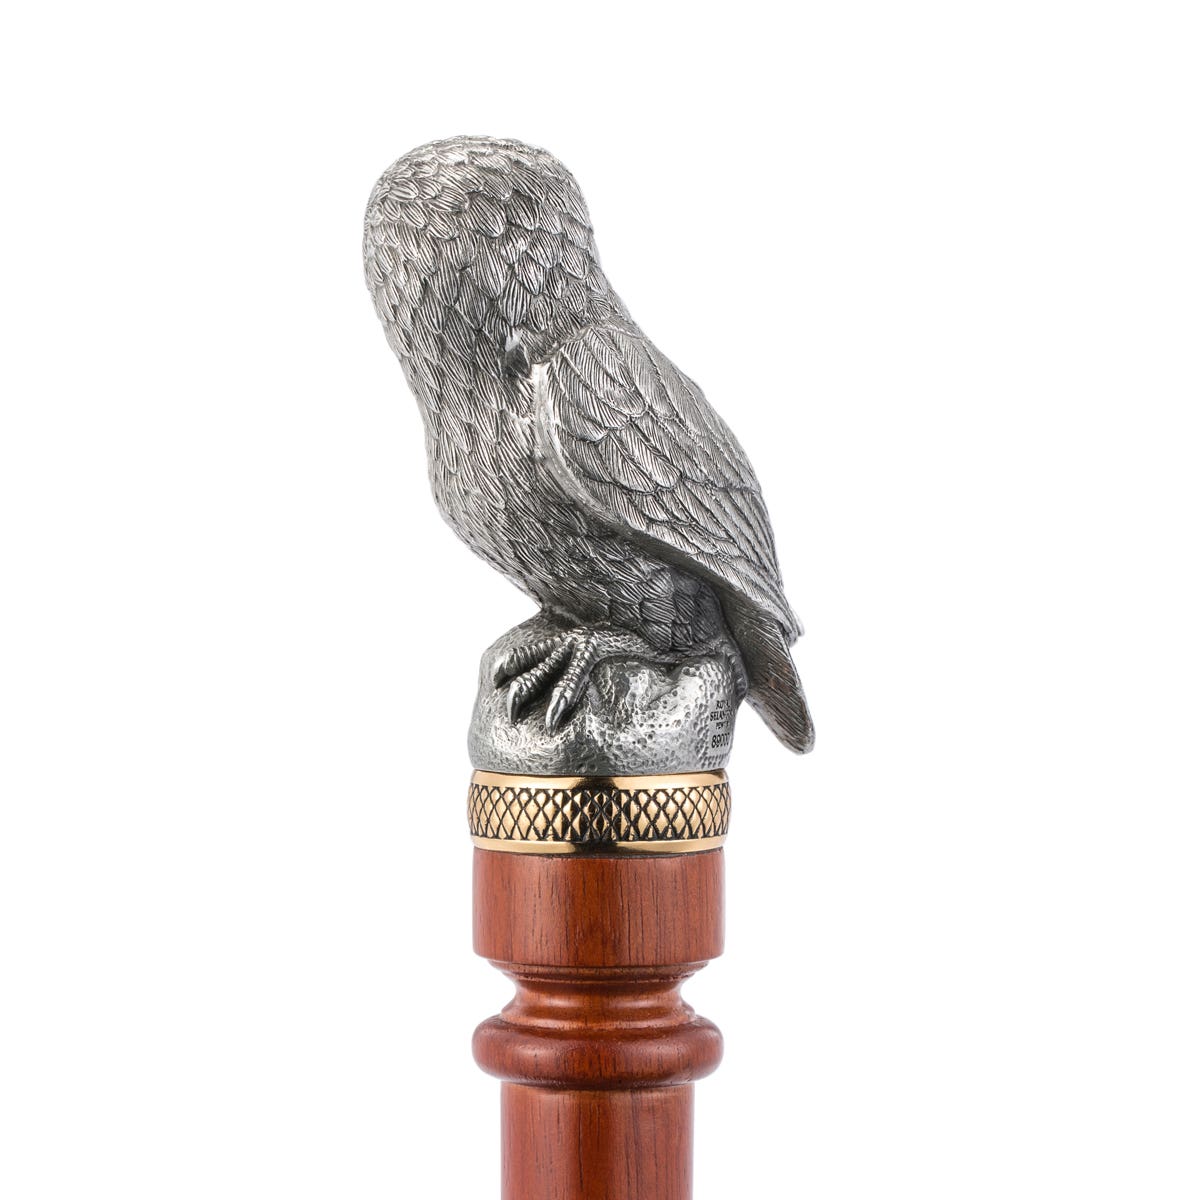 Royal Selangor Woodland Owl Walking Stick - Pewter - Notbrand